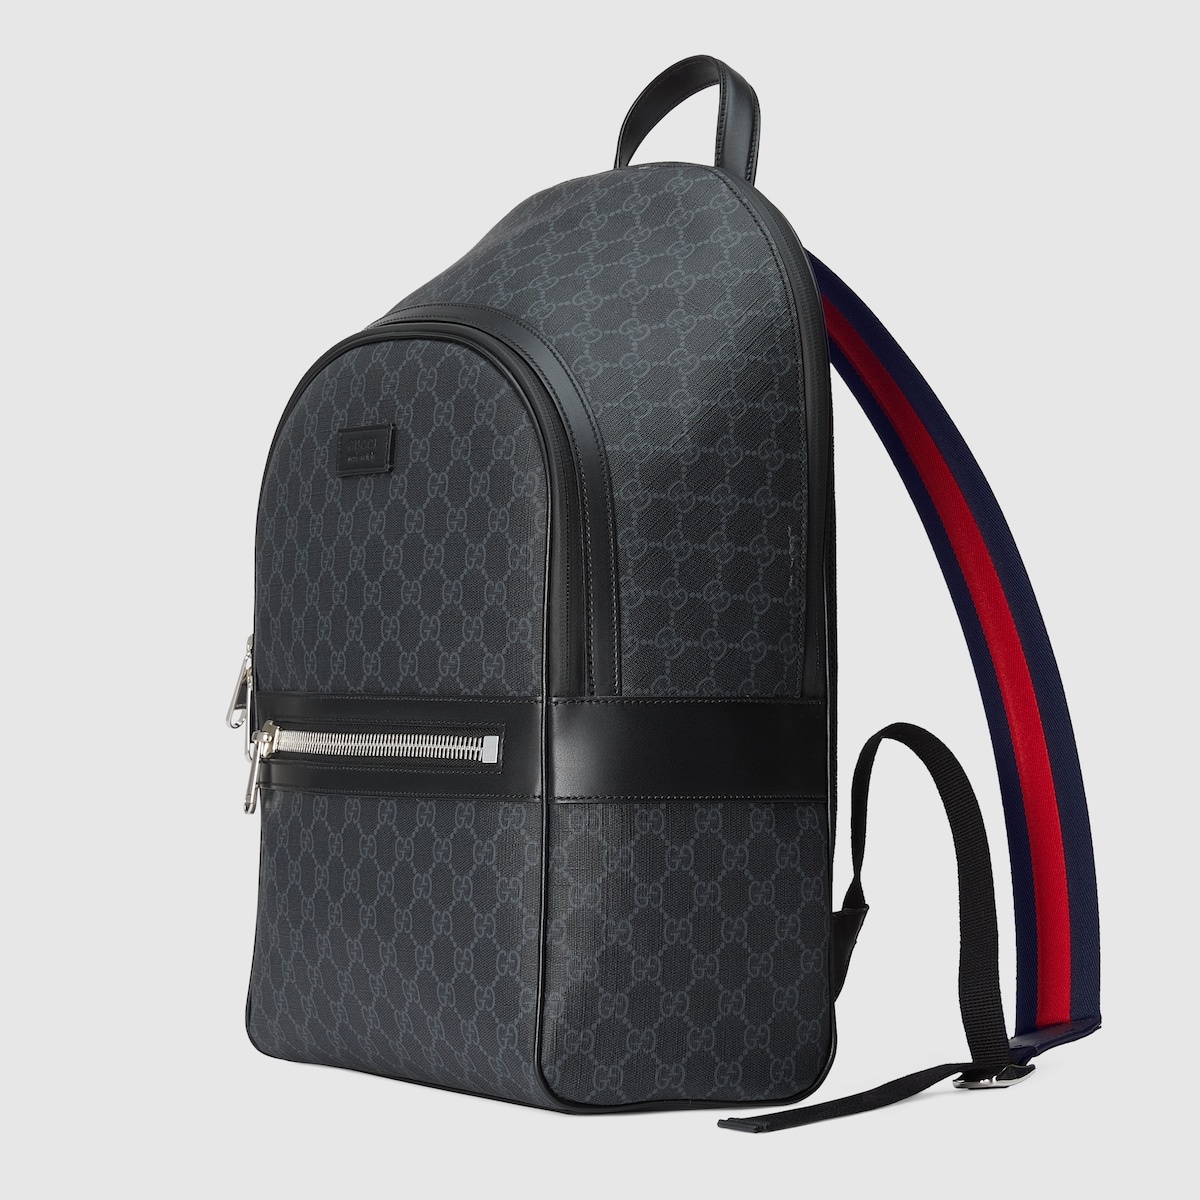 GG backpack - 1